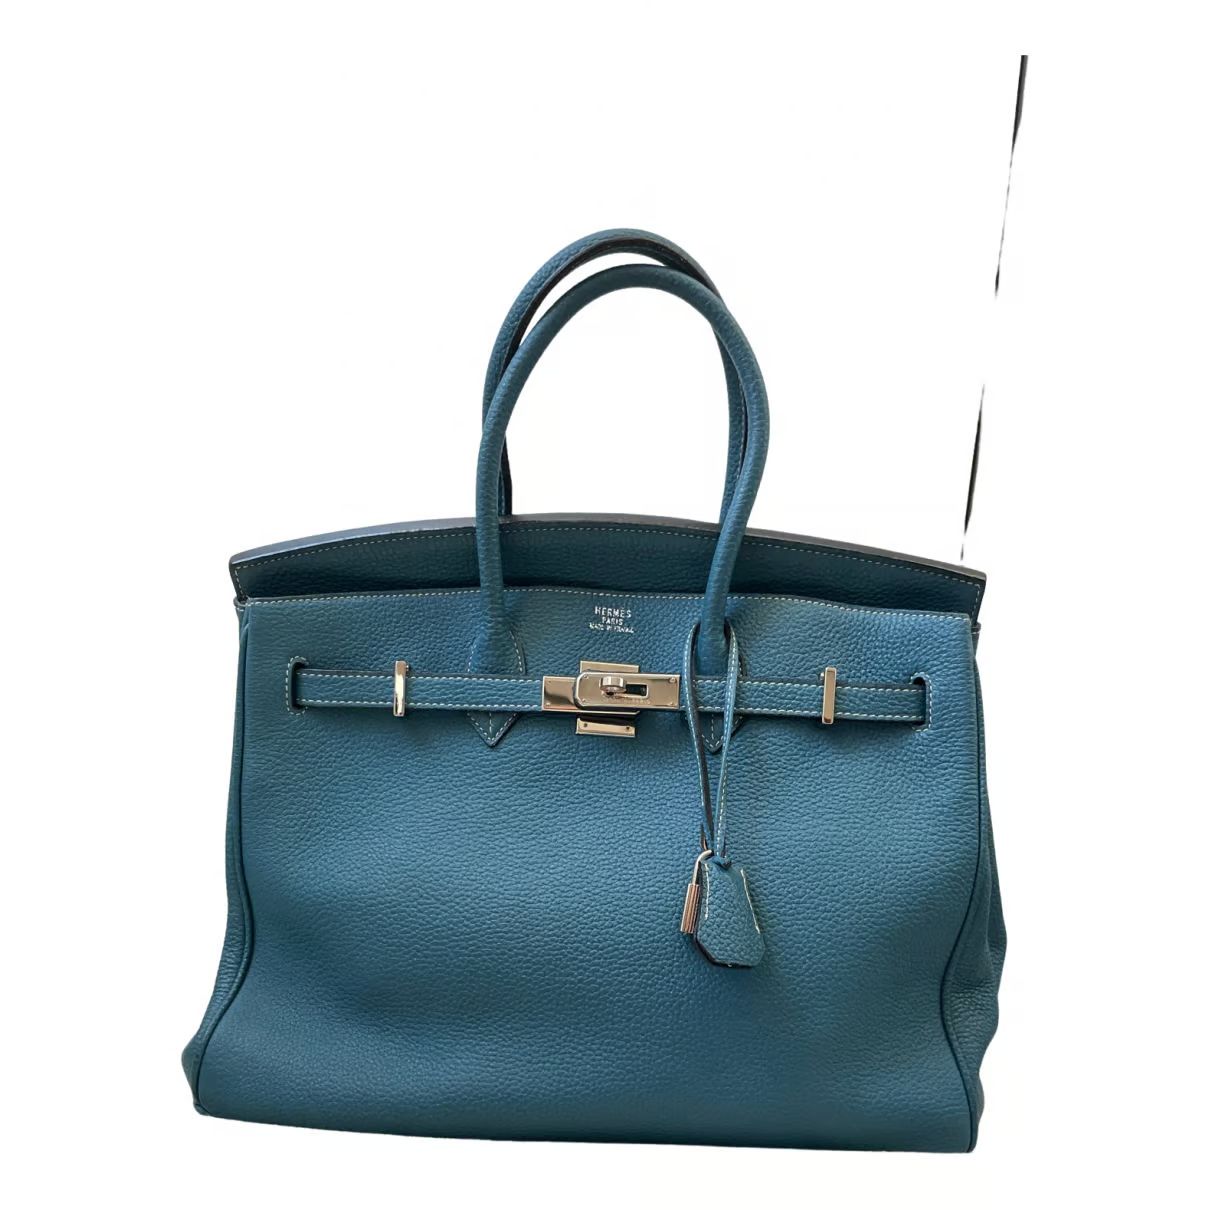 Hermès Birkin Handtasche für Damen | Sicher Kaufen & Verkaufen - Vestiaire Collective | Vestiaire Collective (Global)